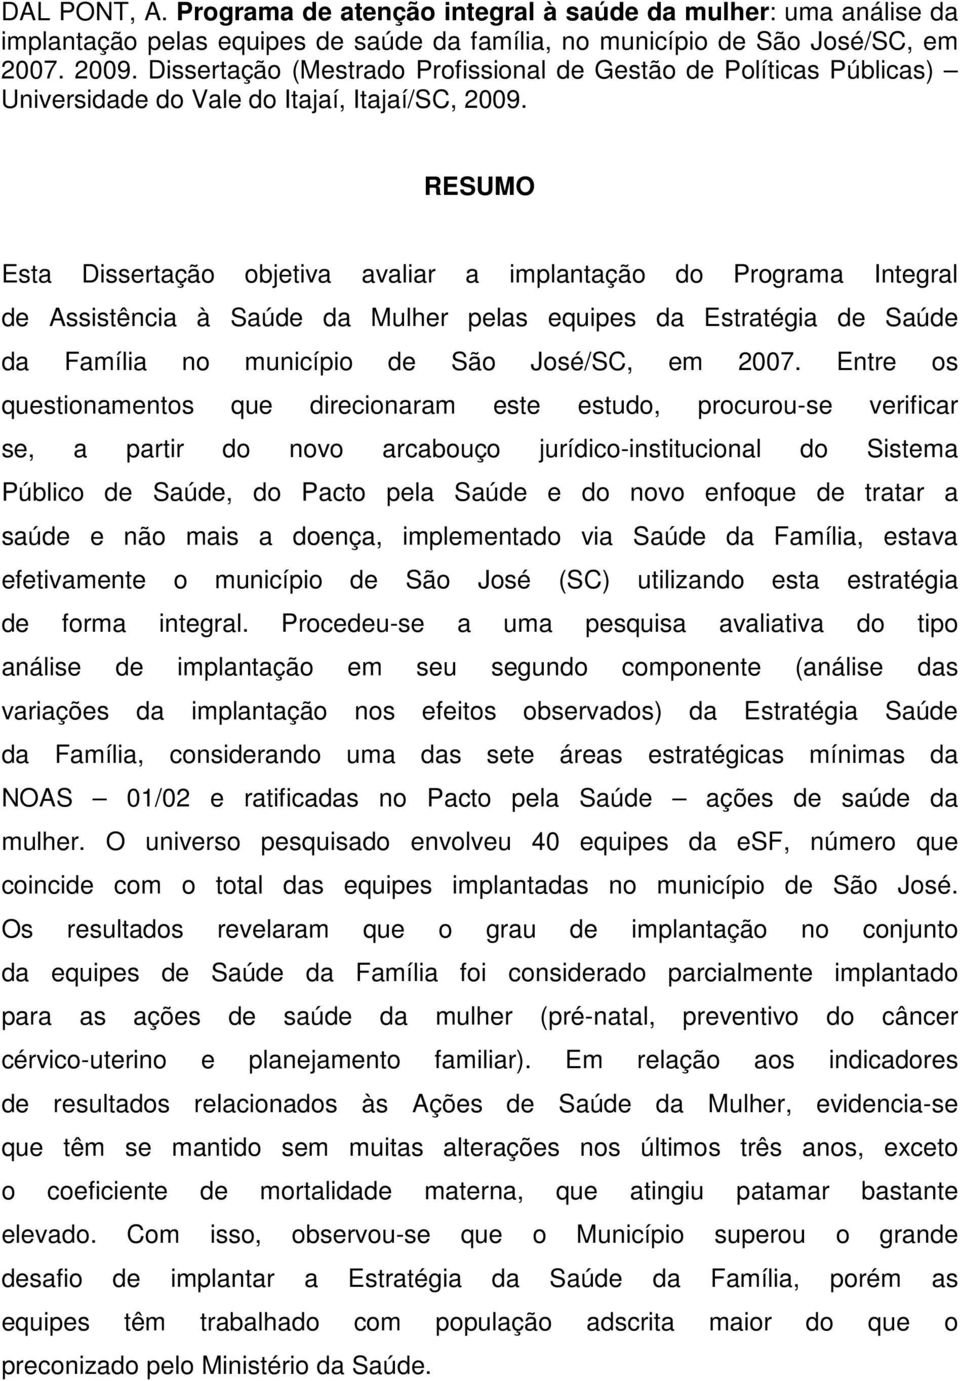 RESUMO Esta Dissertação objetiva avaliar a implantação do Programa Integral de Assistência à Saúde da Mulher pelas equipes da Estratégia de Saúde da Família no município de São José/SC, em 2007.